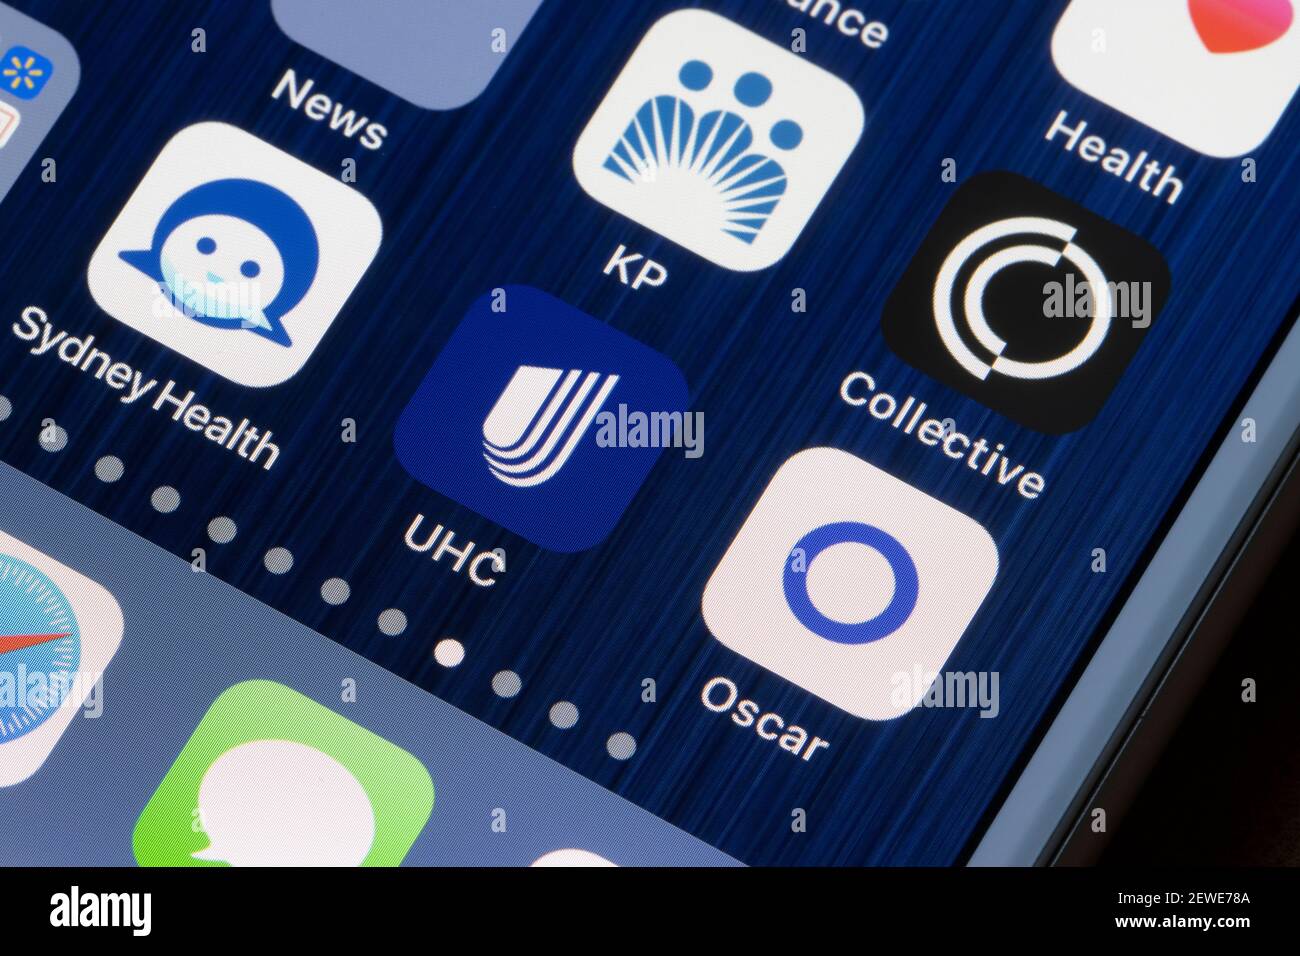 Verschiedene Anwendungen der Krankenversicherung sind auf einem iPhone zu sehen - Oscar Health, UnitedHealthcare, Sydney Health, Collective Health und Kaiser permanente. Stockfoto